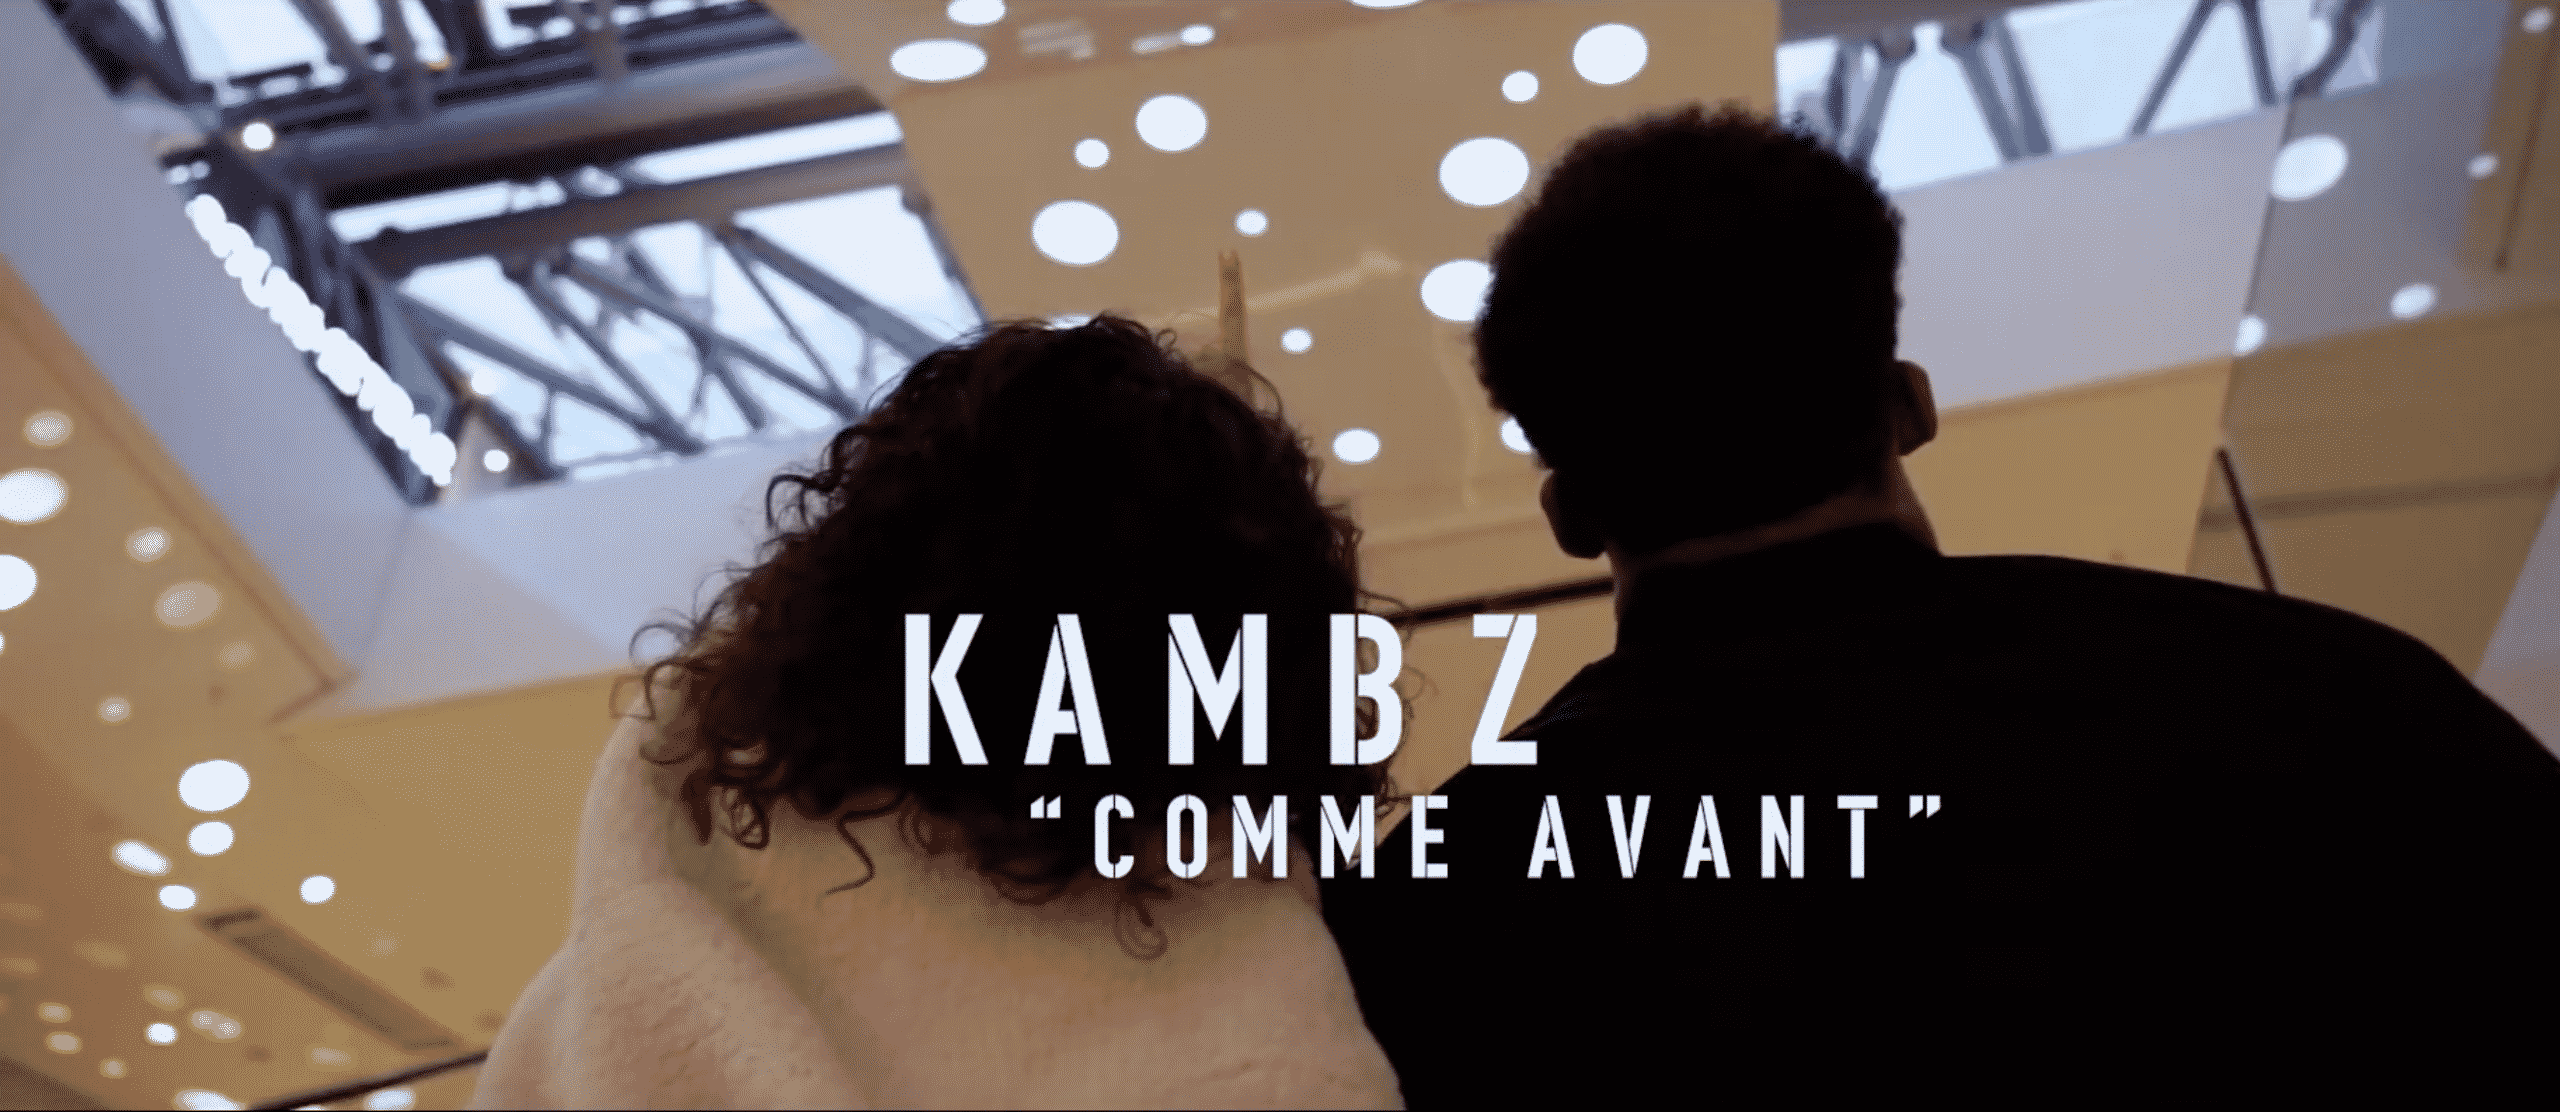 Kambz continue son ascension avec "Comme Avant"